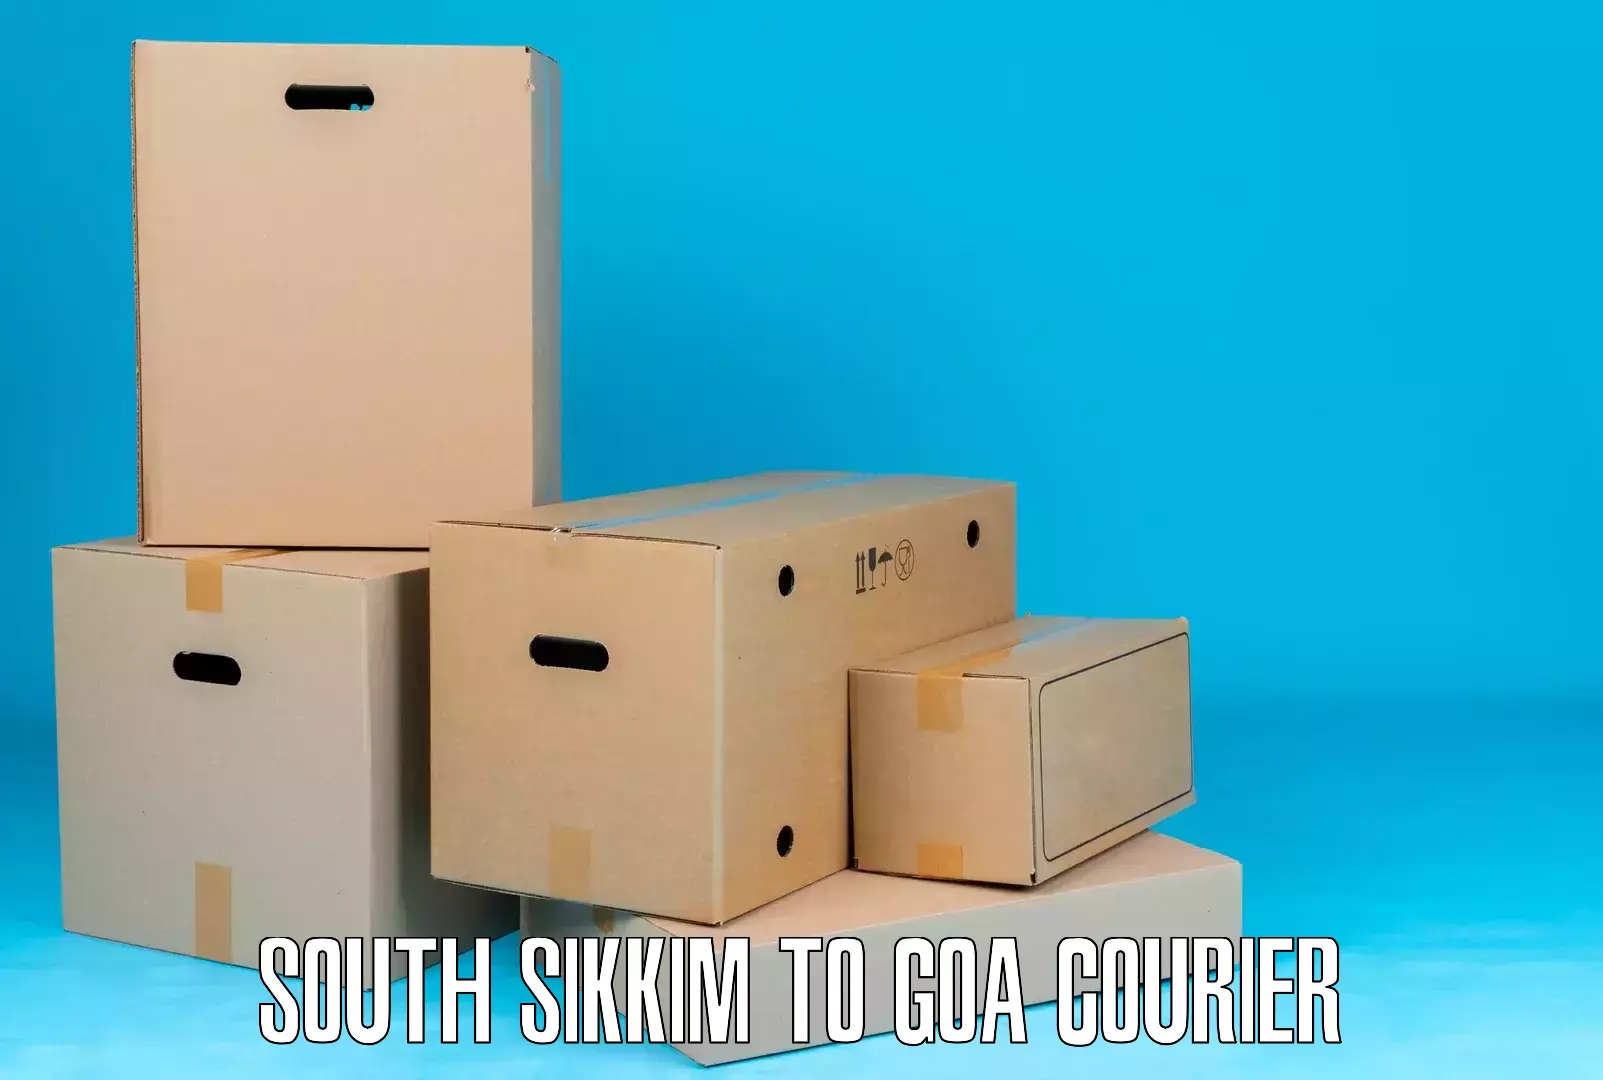 Digital courier platforms South Sikkim to South Goa